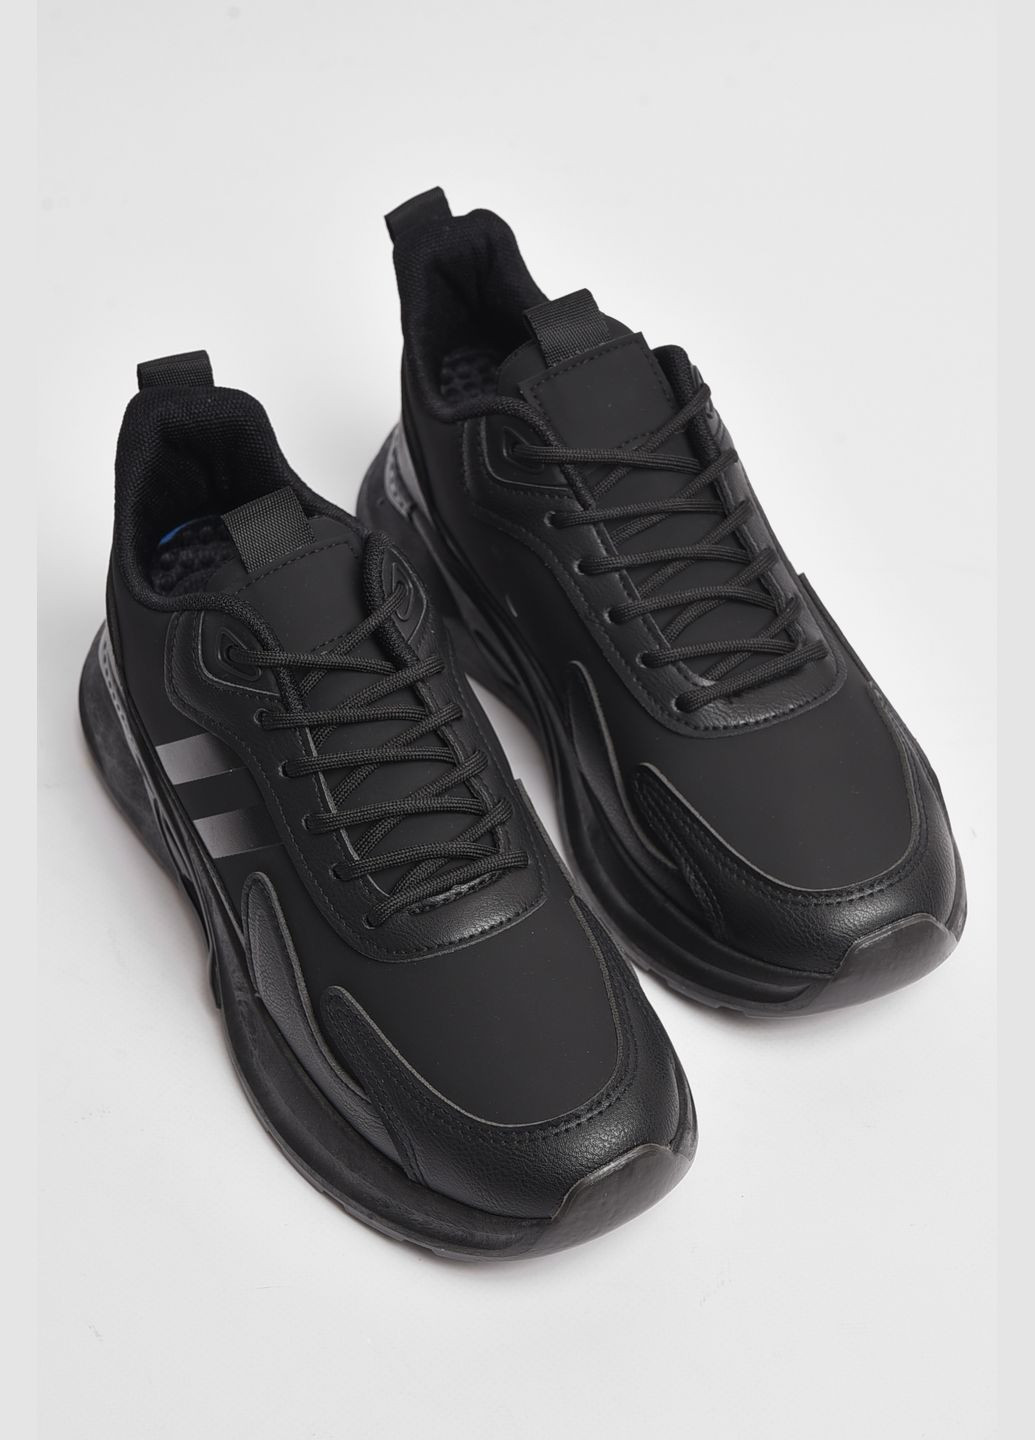 Черные демисезонные кроссовки мужские черного цвета на шнуровке Let's Shop